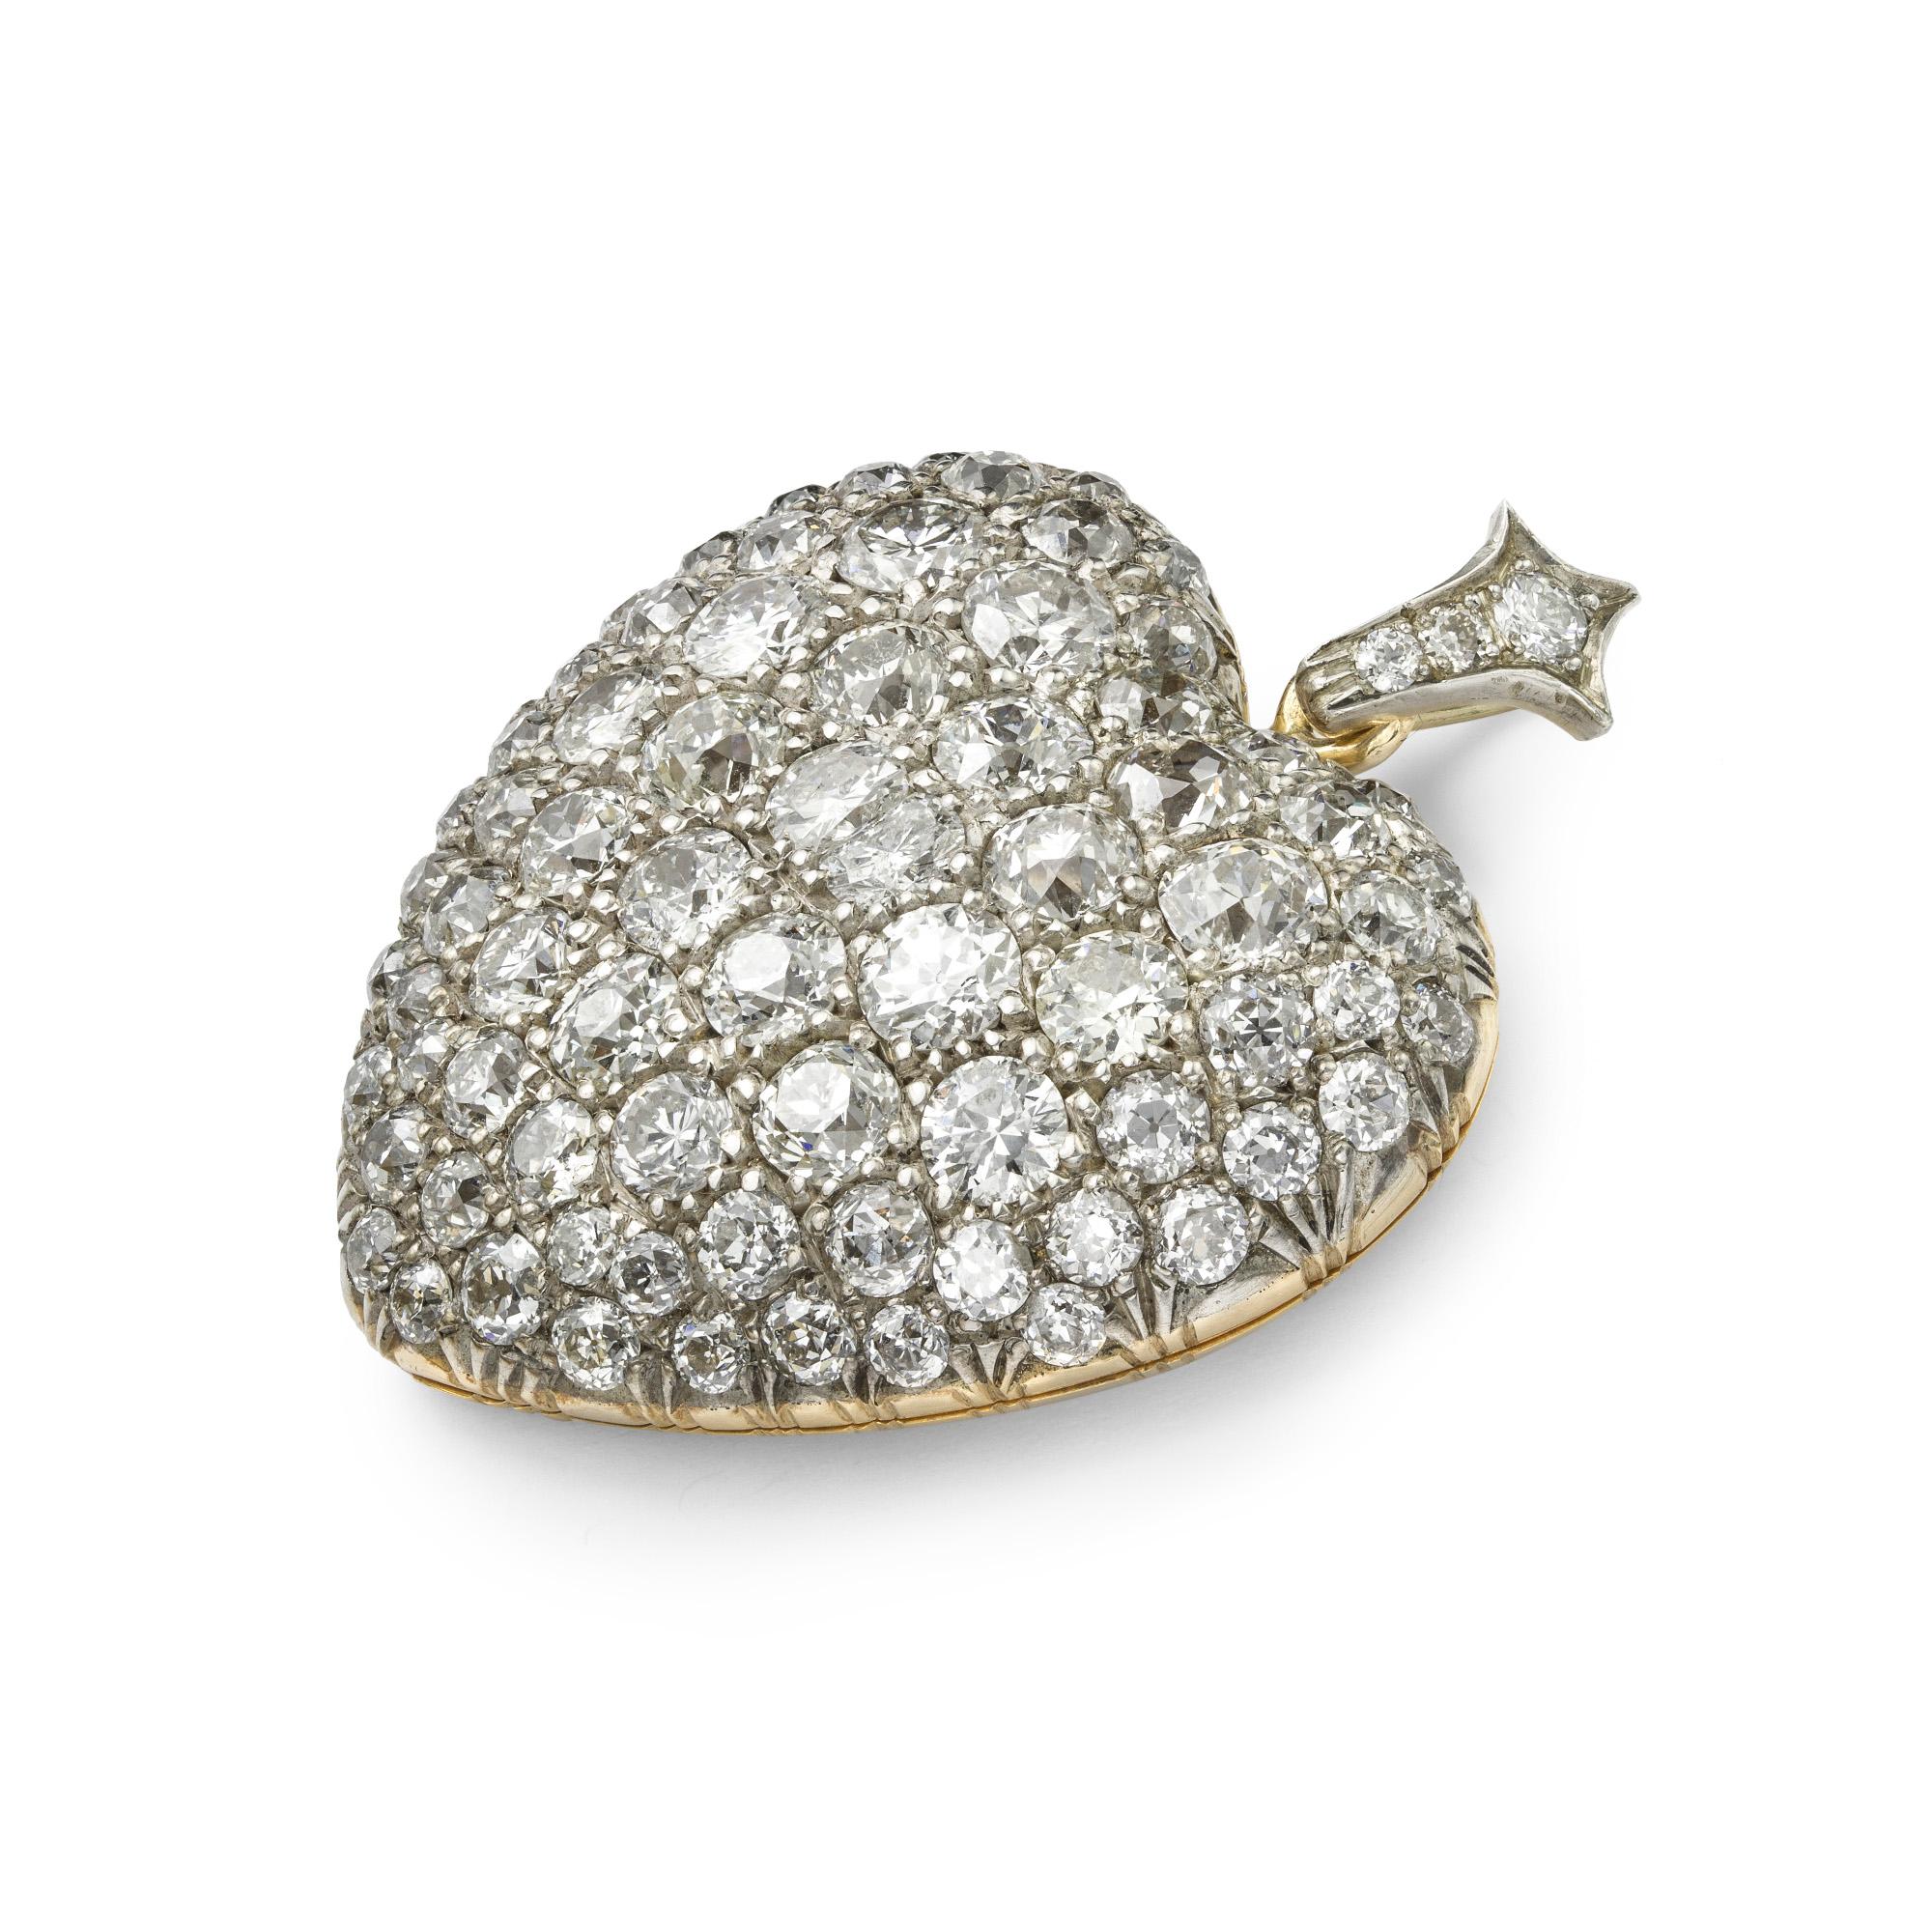 Pendentif en forme de cœur serti de diamants de l'époque victorienne, le pendentif est orné d'anciens diamants taillés en brillant qui partent du centre et sont estimés à un poids total de 11 carats, le grain est serti en argent sur une monture en